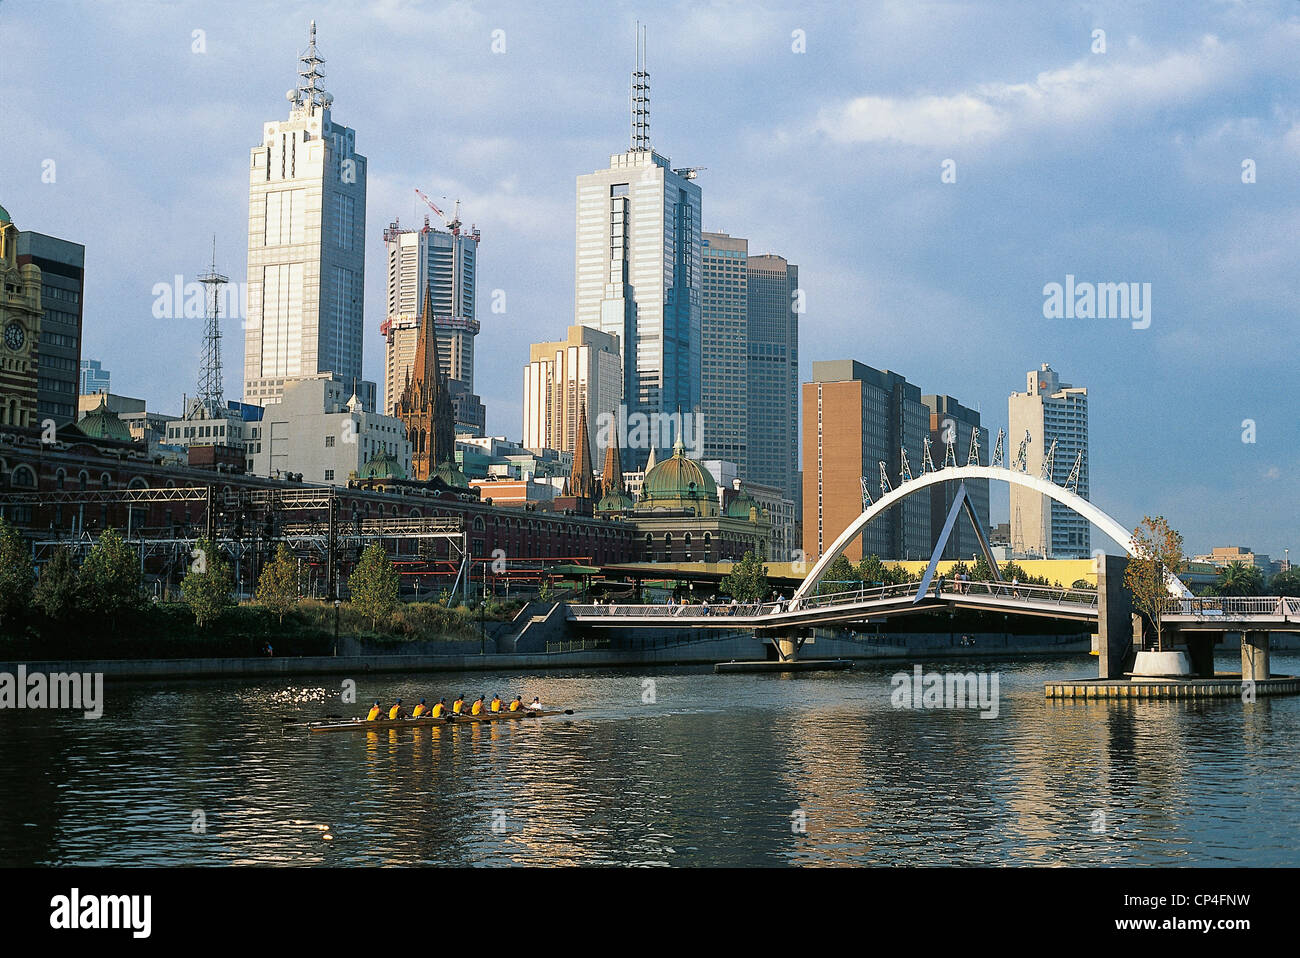 Australia - Victoria - Melbourne, the Yarra River. Stock Photo